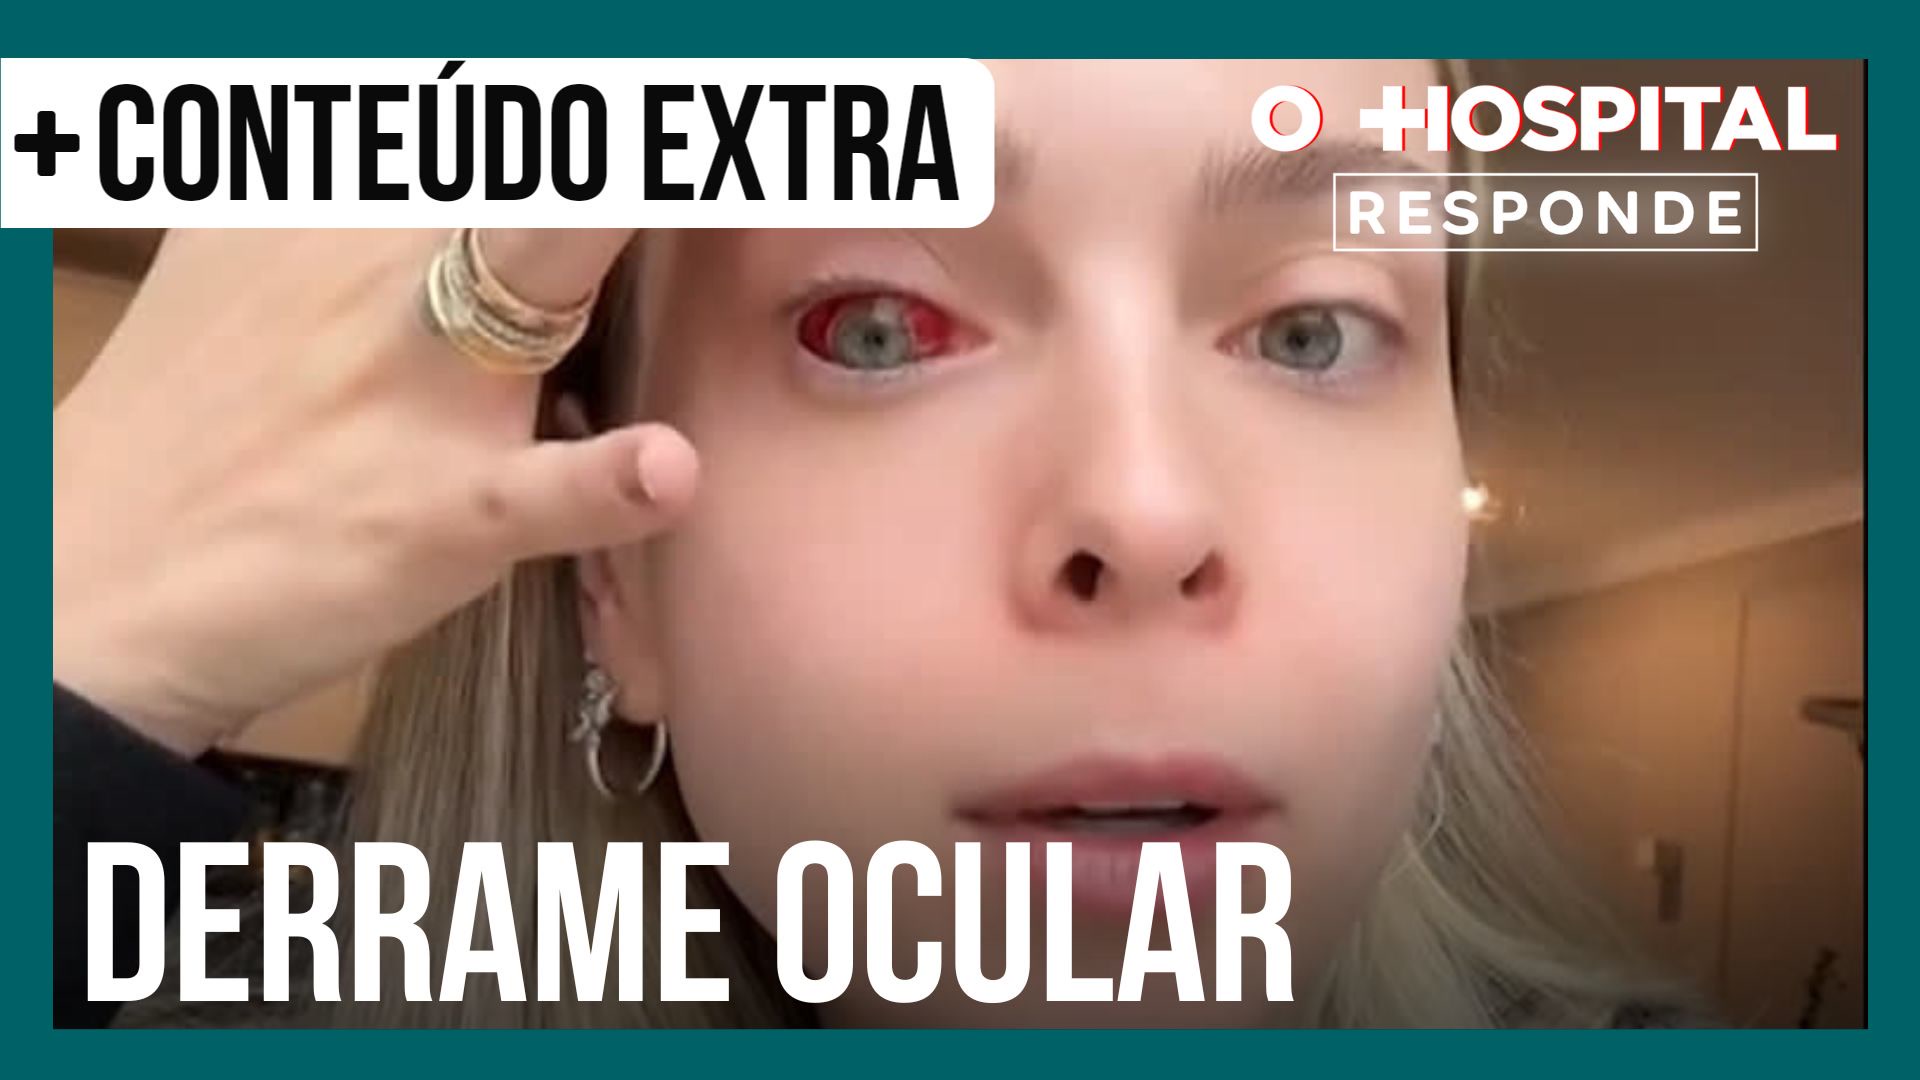 Vídeo: Tata Estaniecki sofre derrame ocular; oftalmologista explica condição | O Hospital Responde